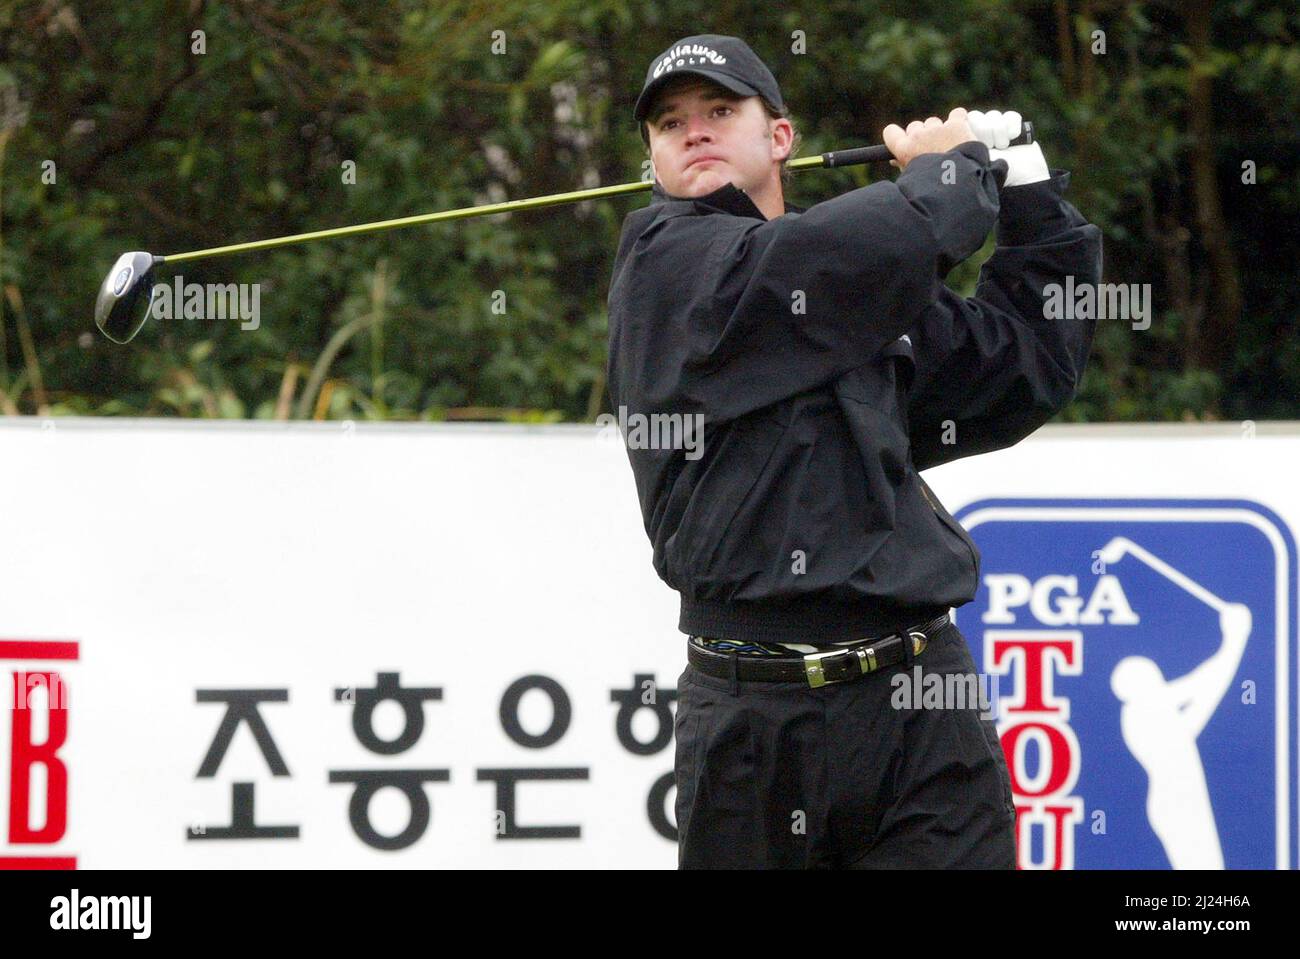 26 de noviembre de 2004-Seogwipo, Corea del Sur-Brian Gay piloto de tiro jugar en un PGA TOUR Championship 2round quinto T en Jeju Island el 26 de noviembre de 2004, Corea del Sur. Foto de stock